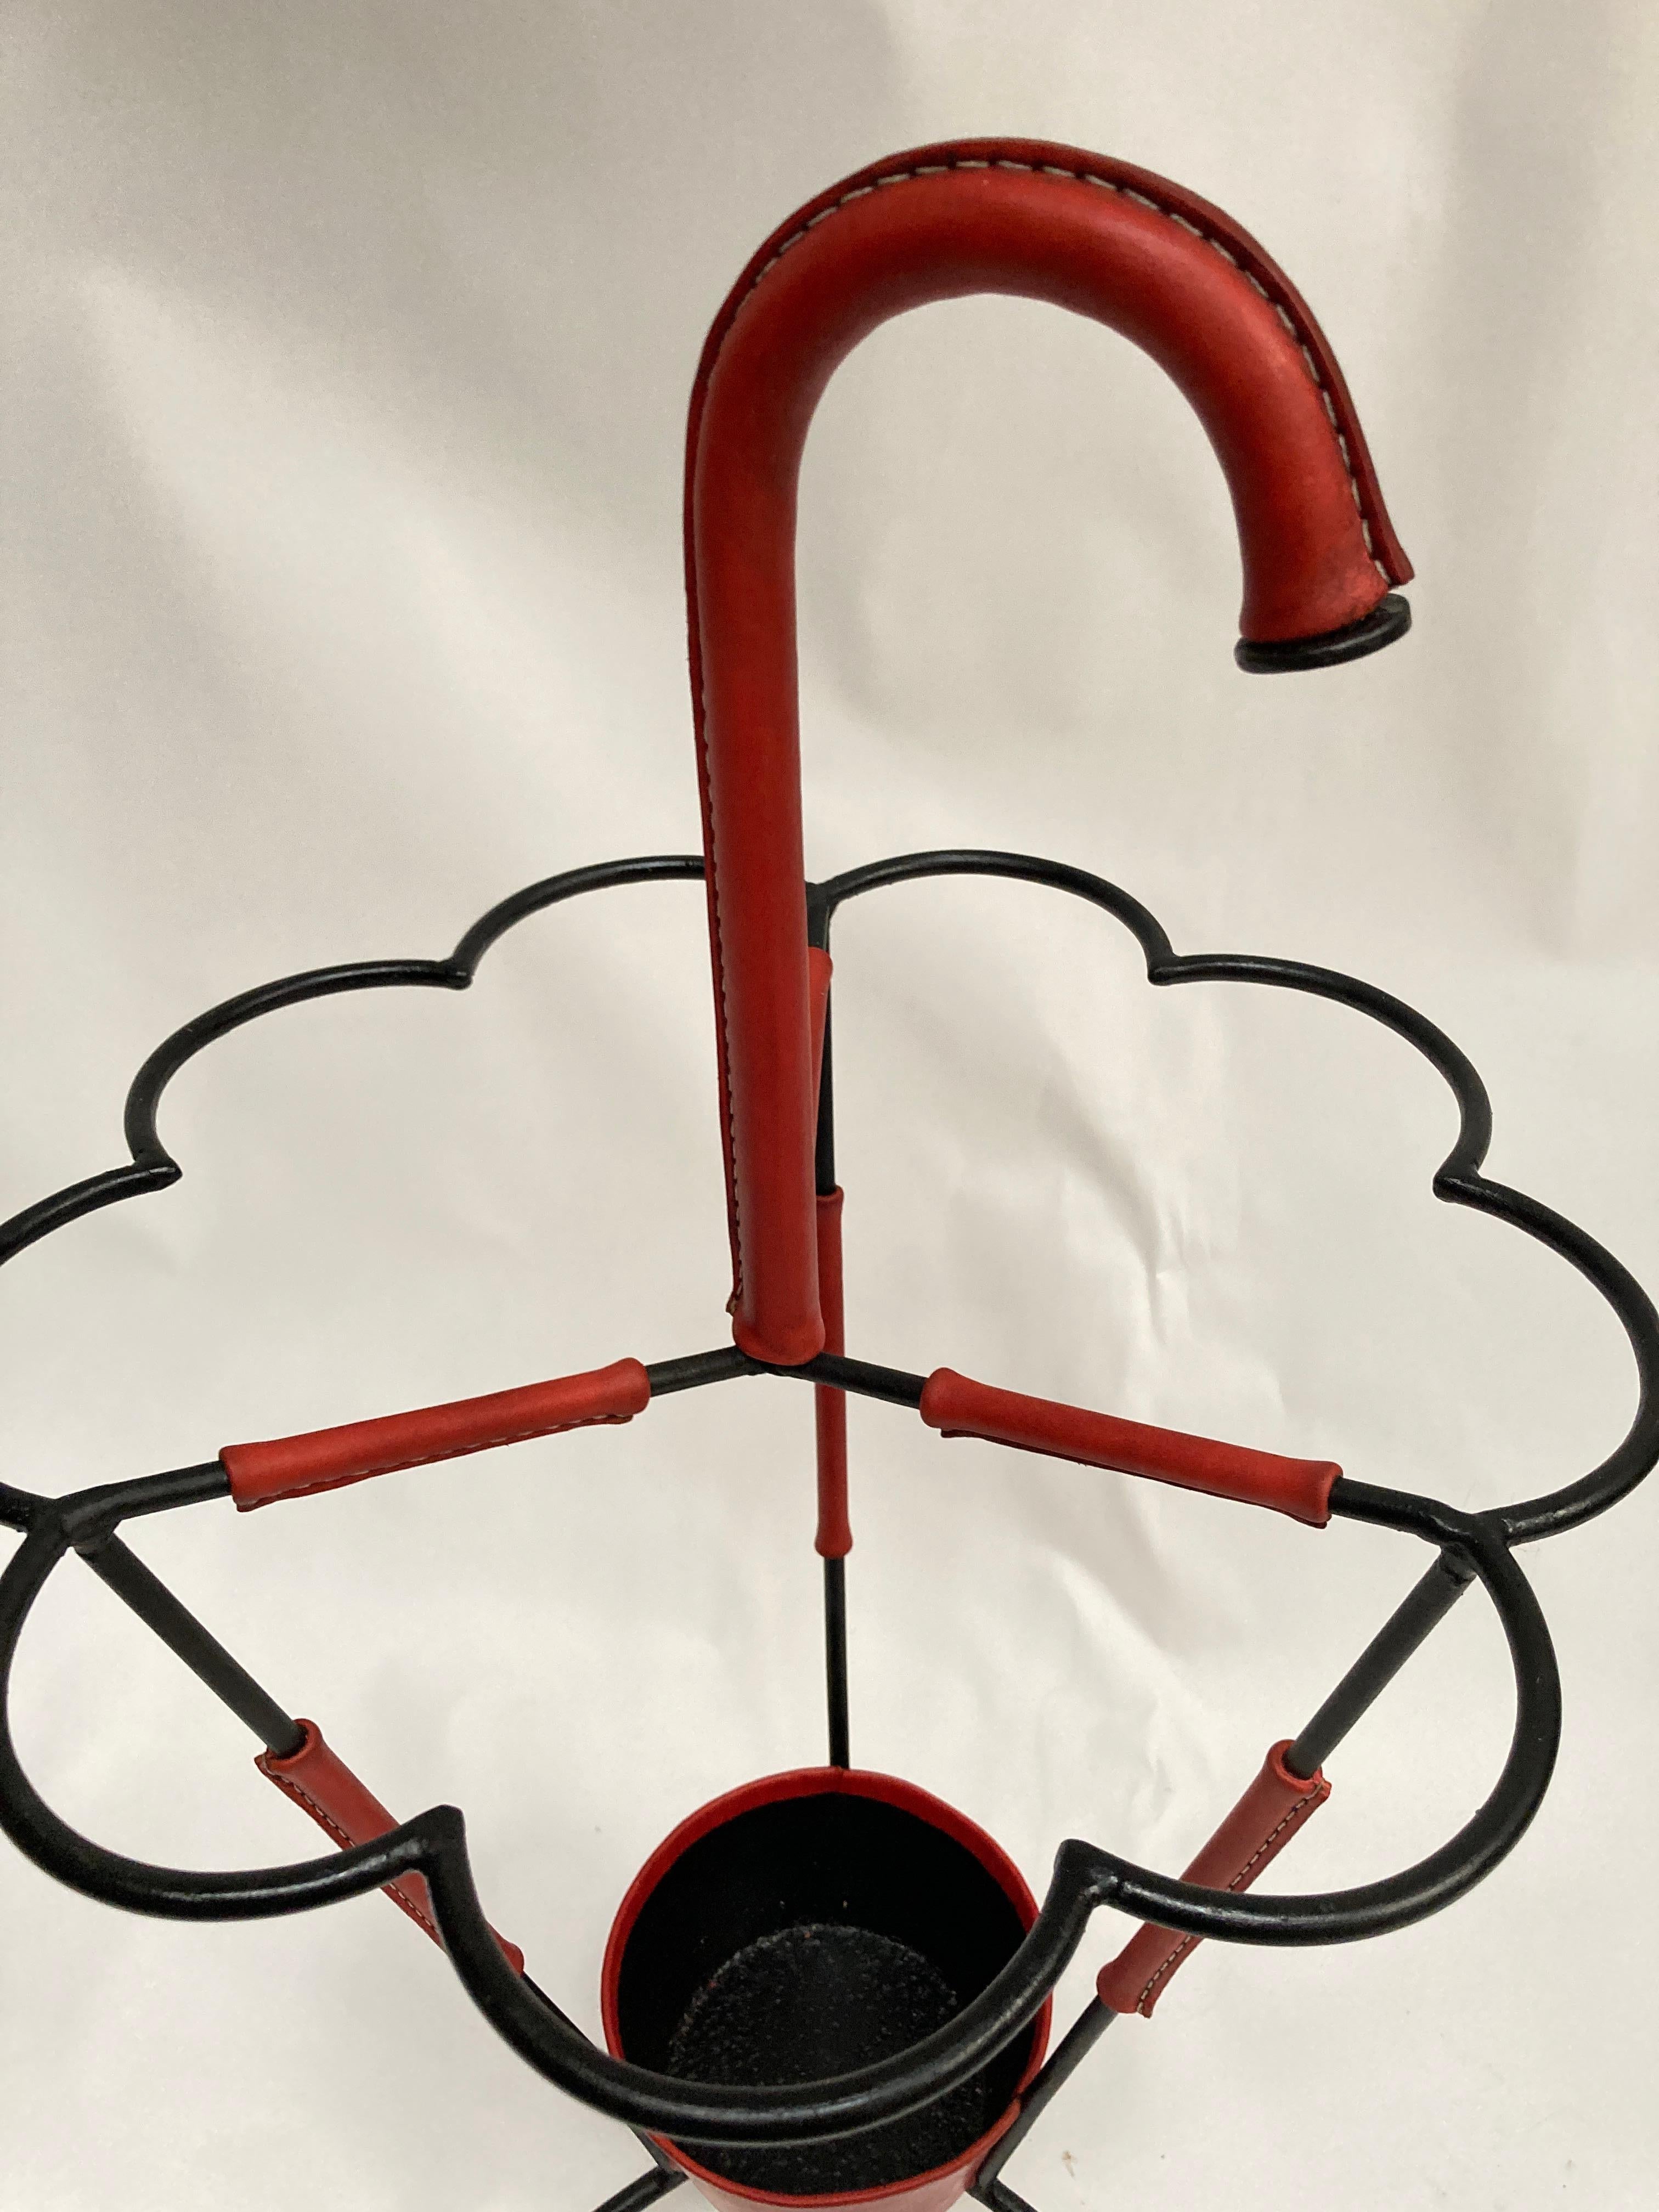 Sehr seltener Schirmständer aus Metall und rotem genähtem Leder
Toller Zustand